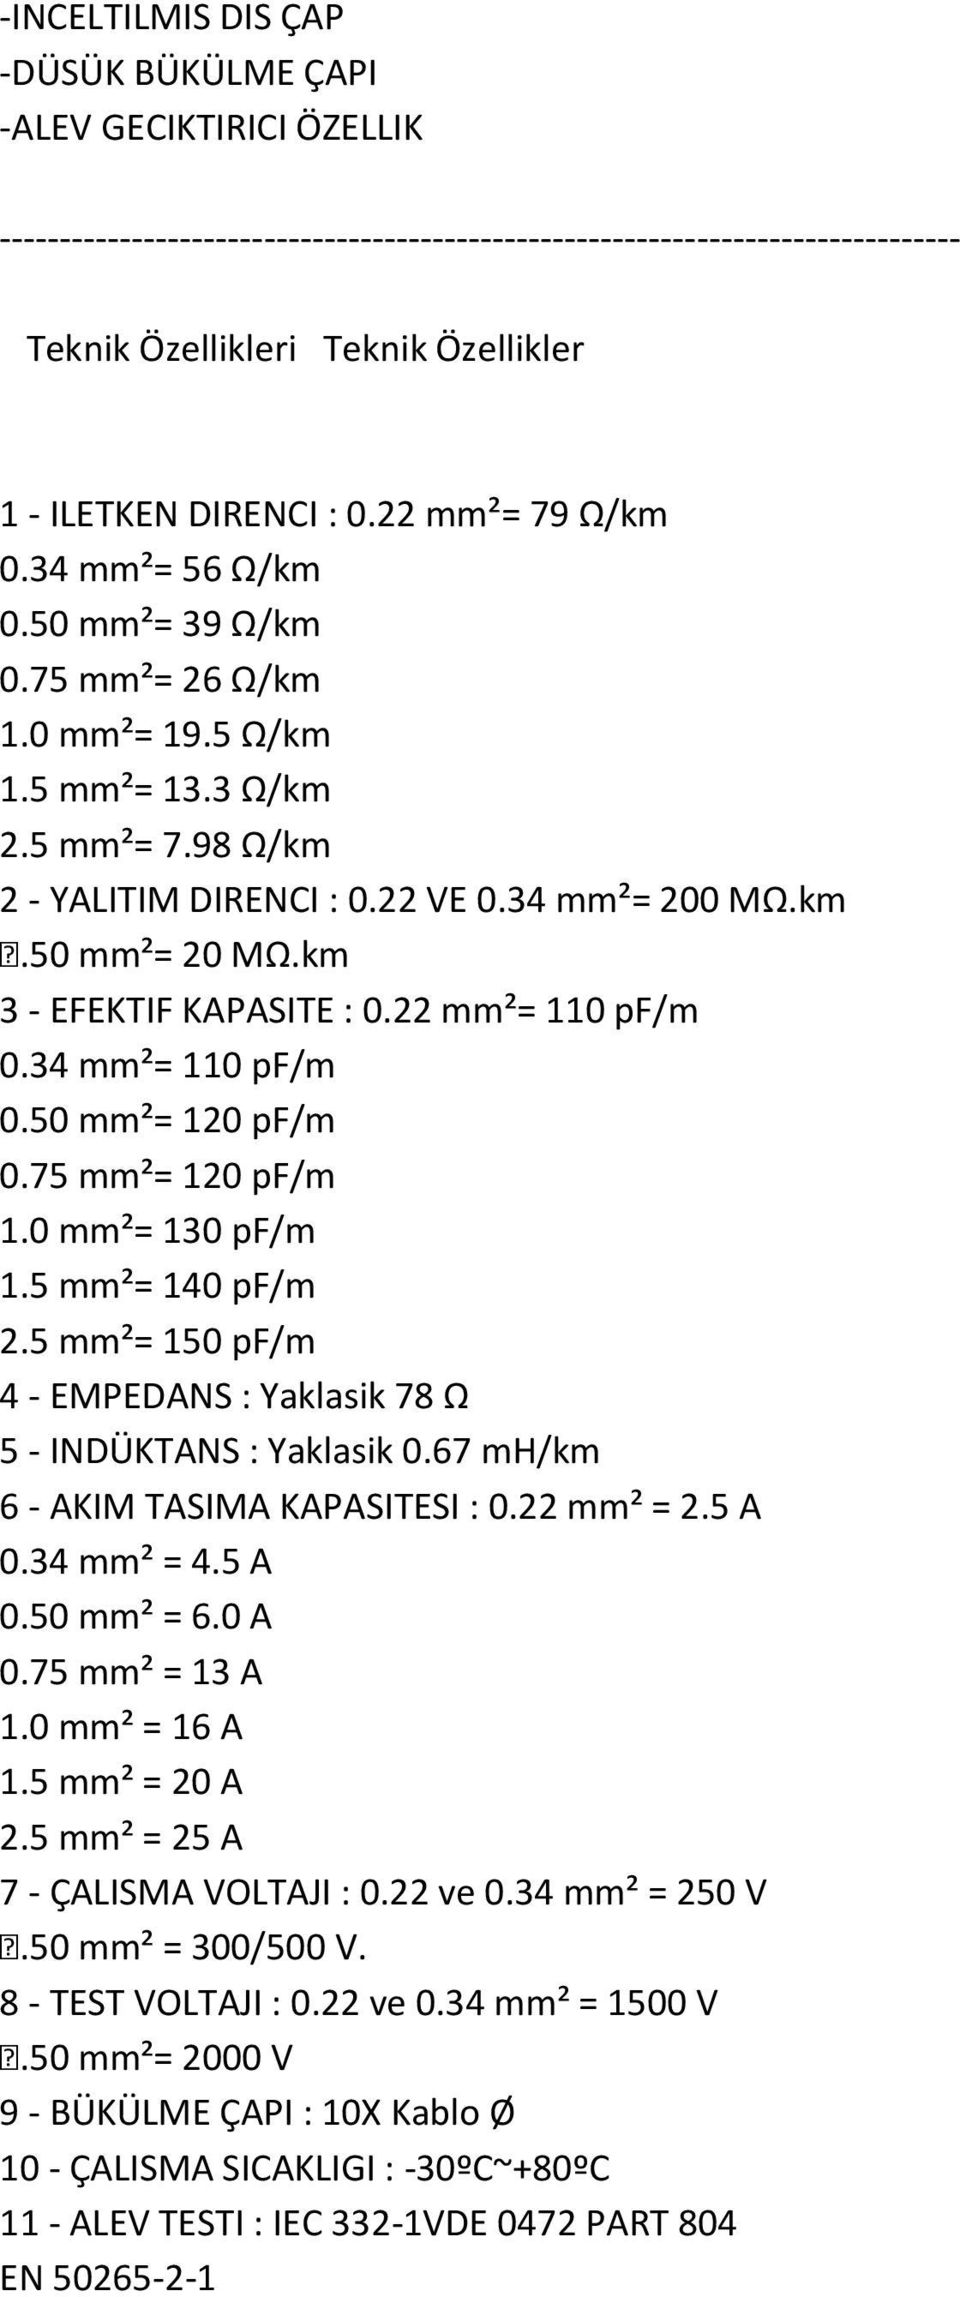 km 3 - EFEKTIF KAPASITE : 0.22 mm²= 110 pf/m 0.34 mm²= 110 pf/m 0.50 mm²= 120 pf/m 0.75 mm²= 120 pf/m 1.0 mm²= 130 pf/m 1.5 mm²= 140 pf/m 2.